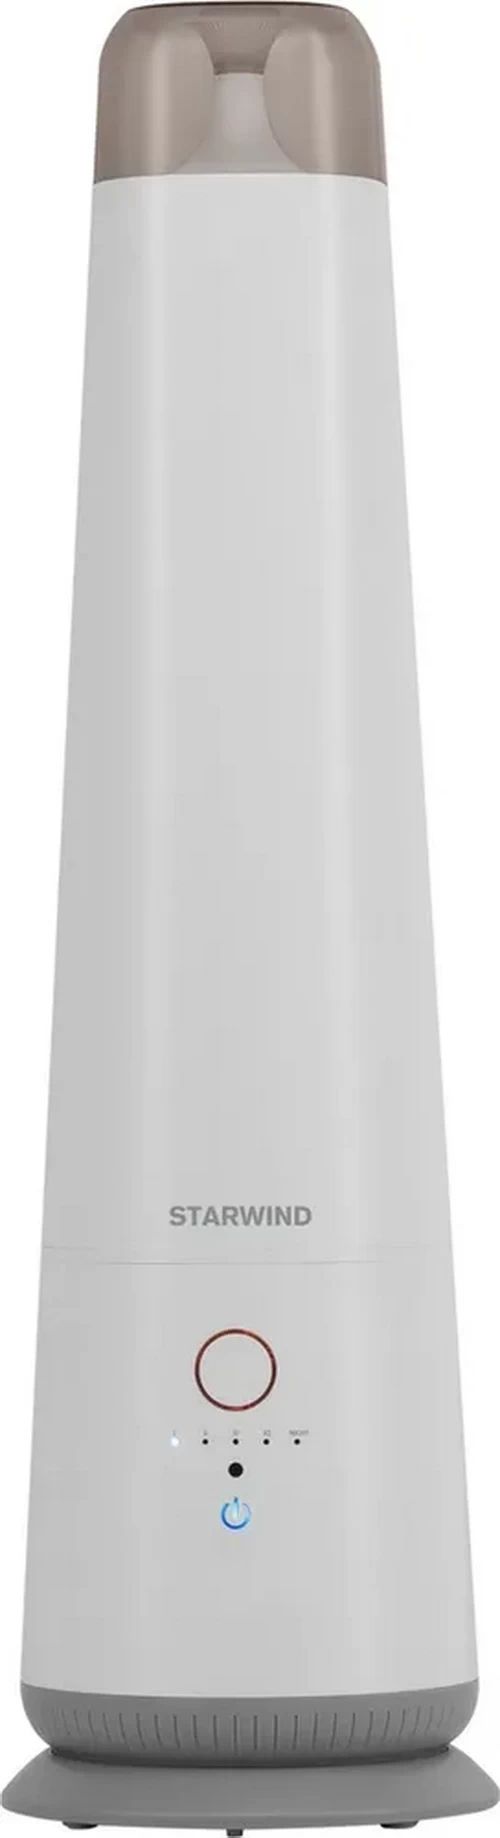 Воздухоувлажнитель STARWIND SHC1550 белый